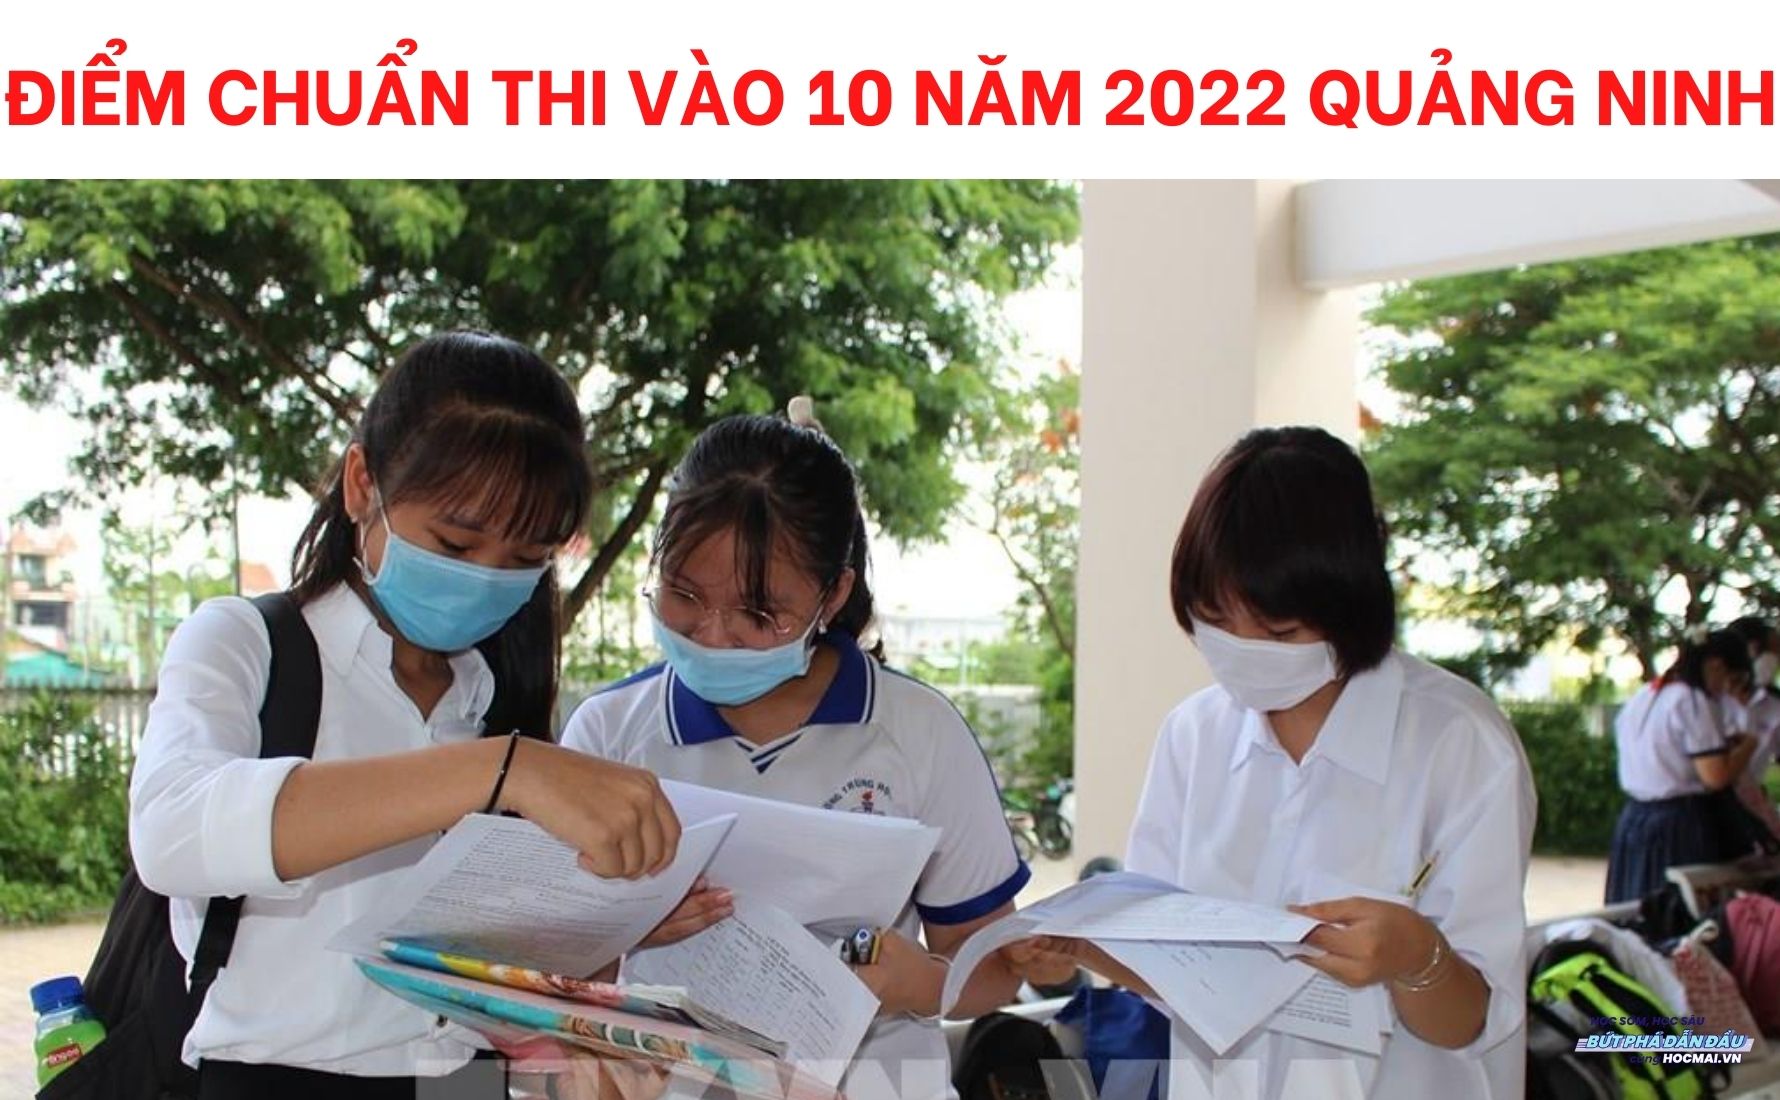 Quy trình xét tuyển vào lớp 10 ở Quảng Ninh như thế nào?
